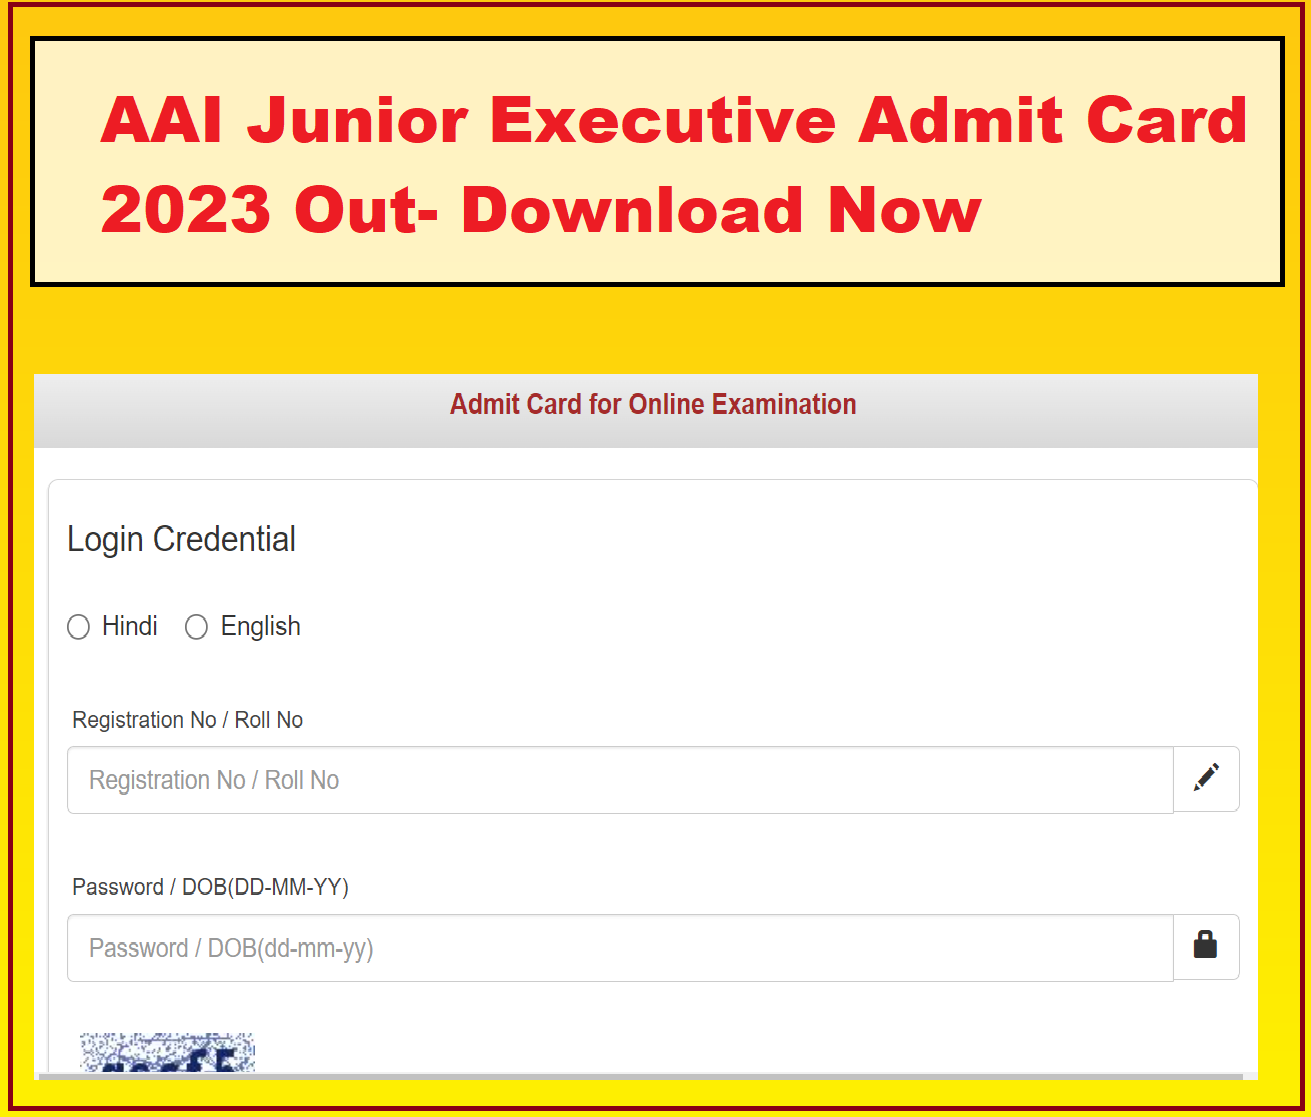 AAI Junior Executive Admit Card